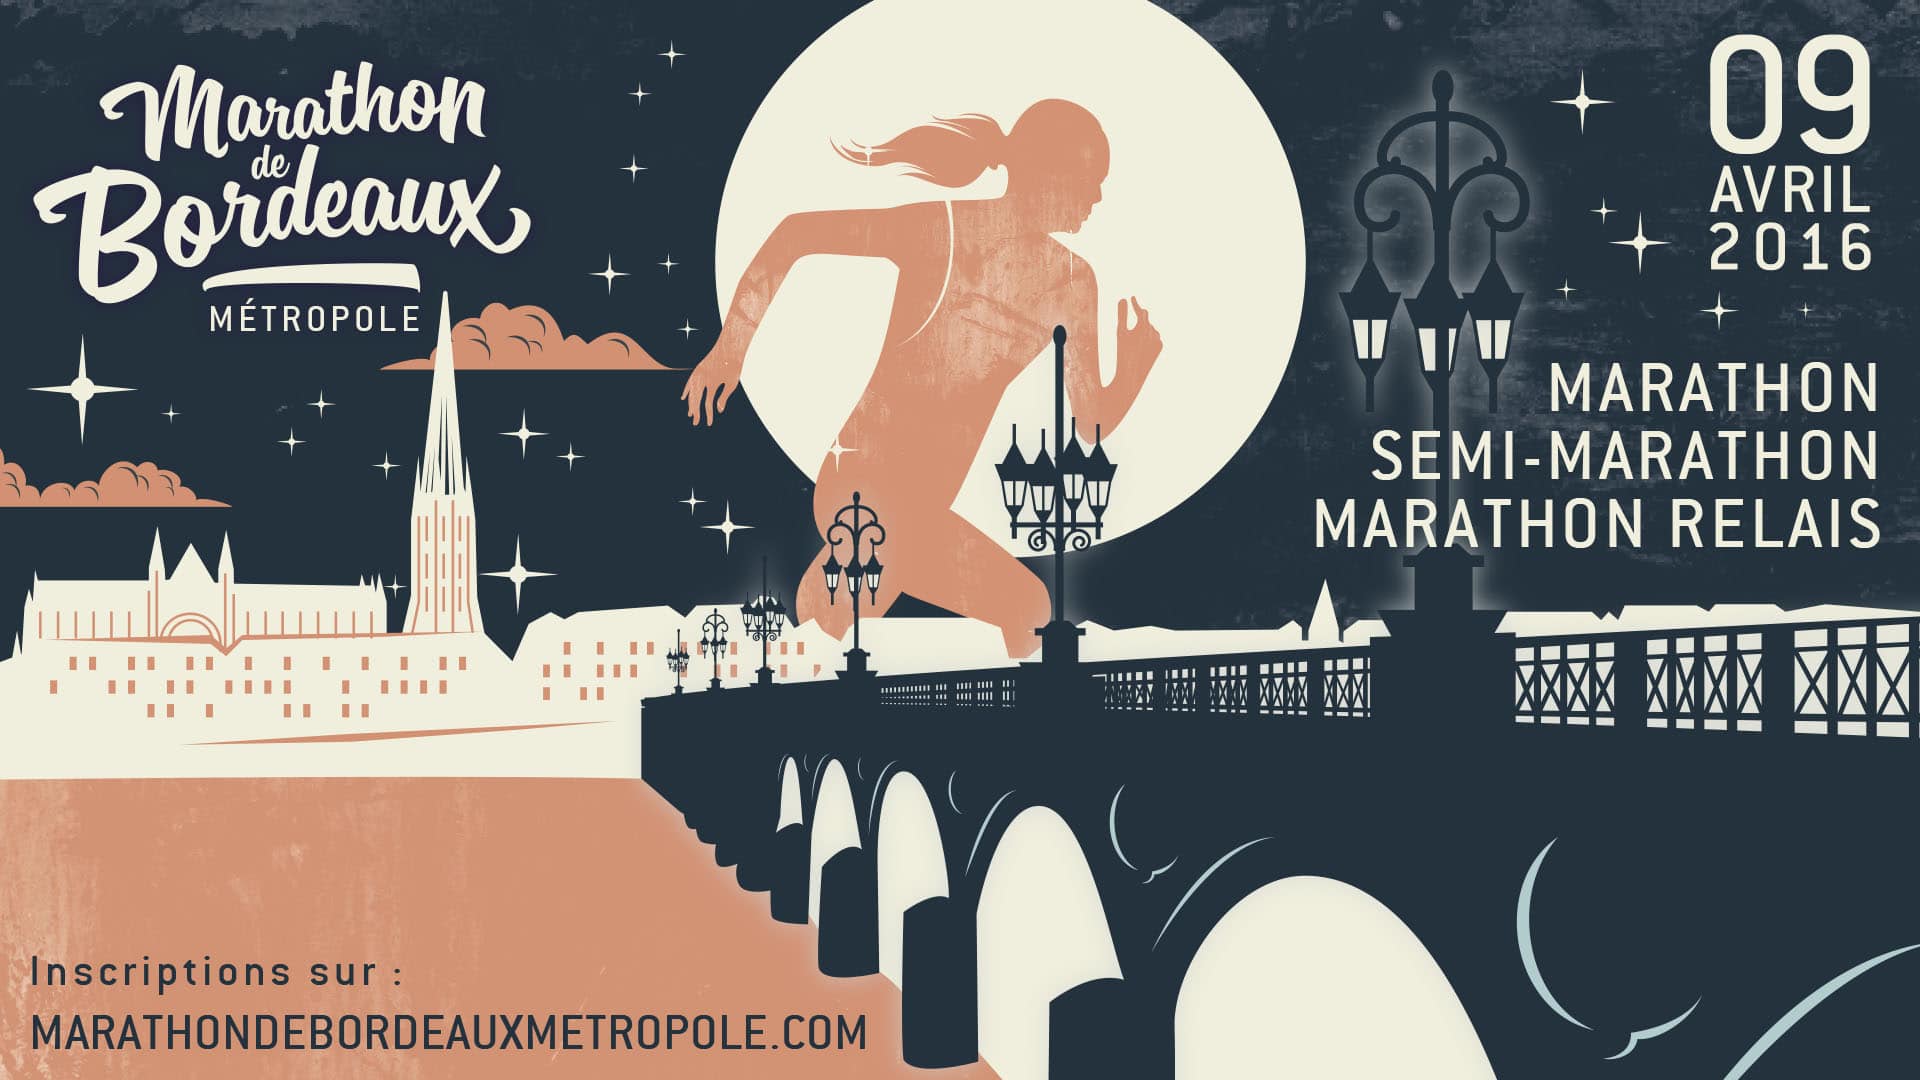 Affiche du marathon de Bordeaux